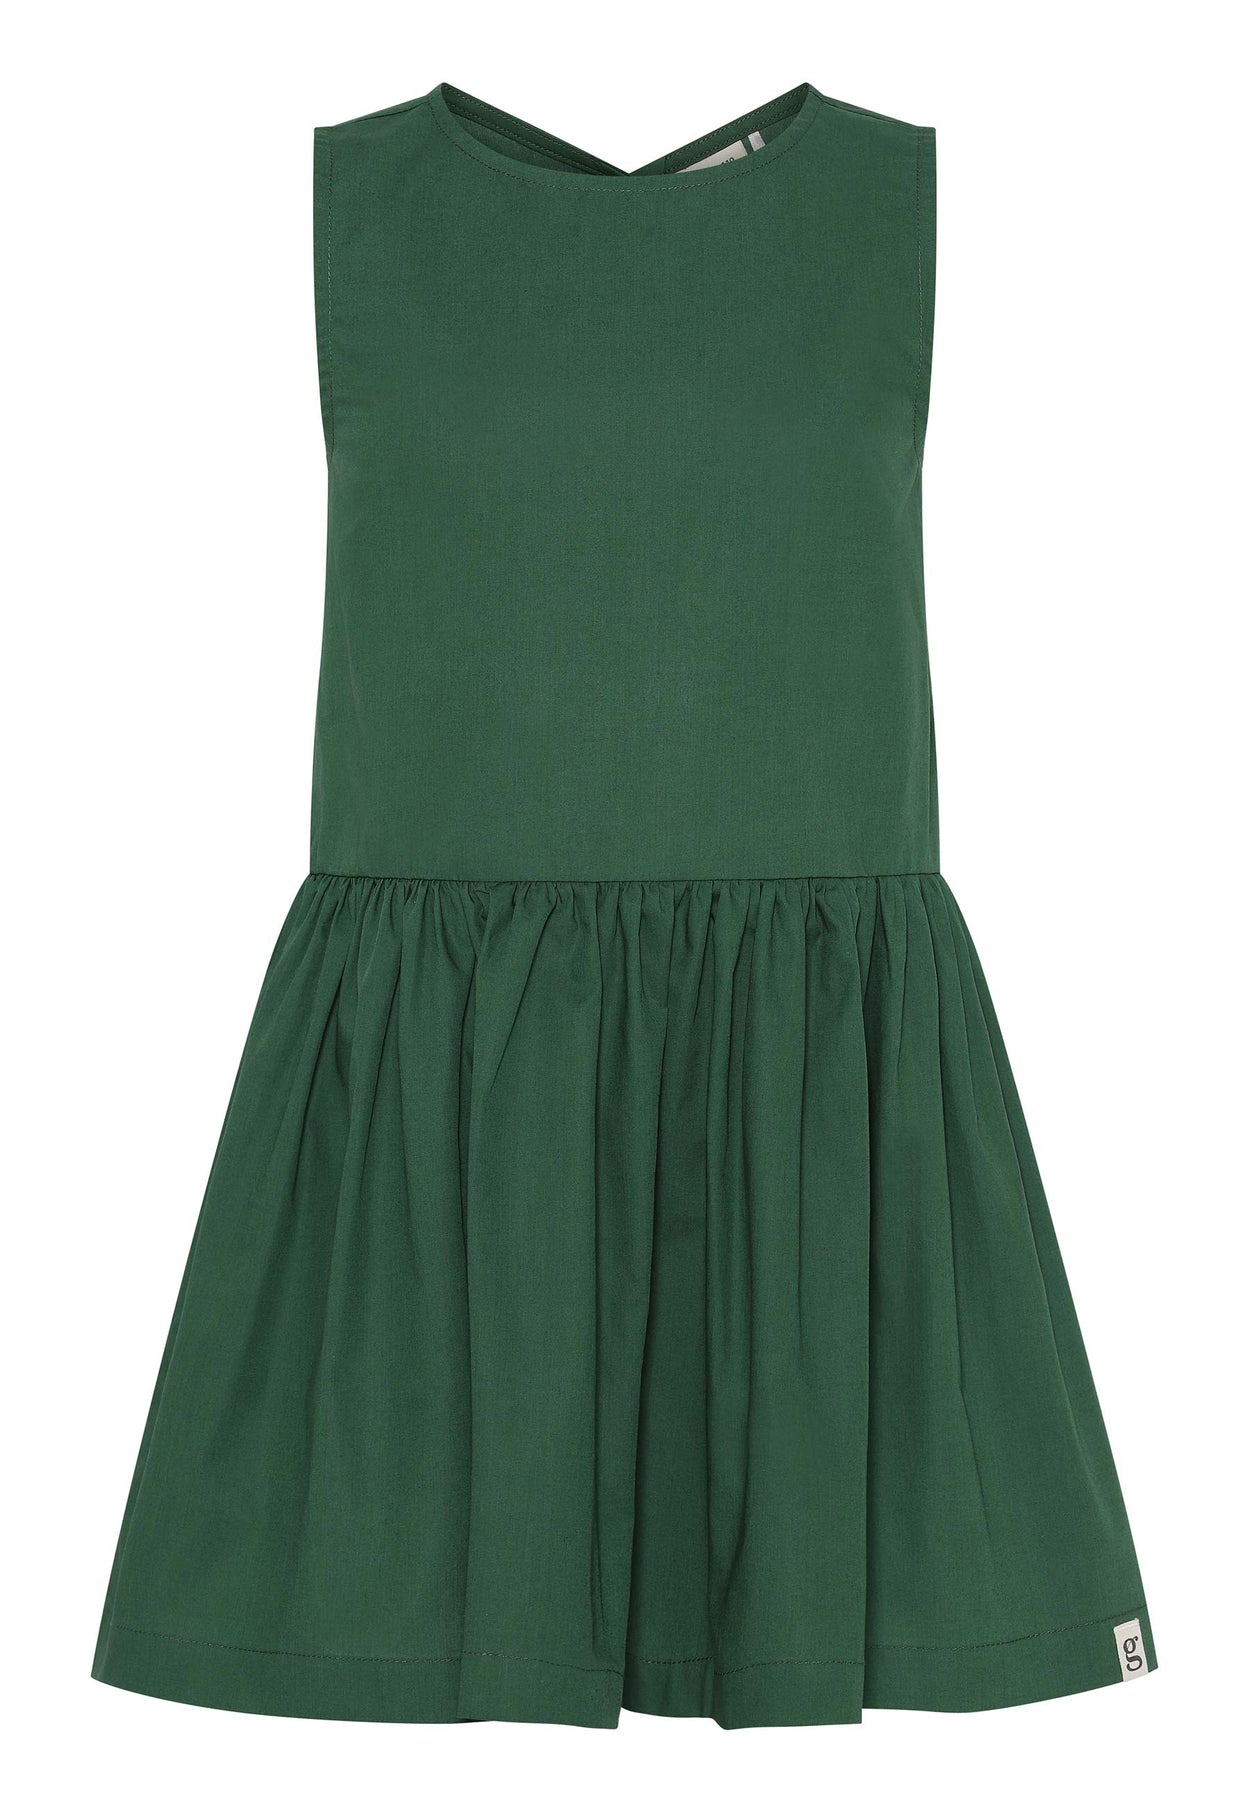 GROBUND Vega kjolen mini - den vendbare i mørkegrøn